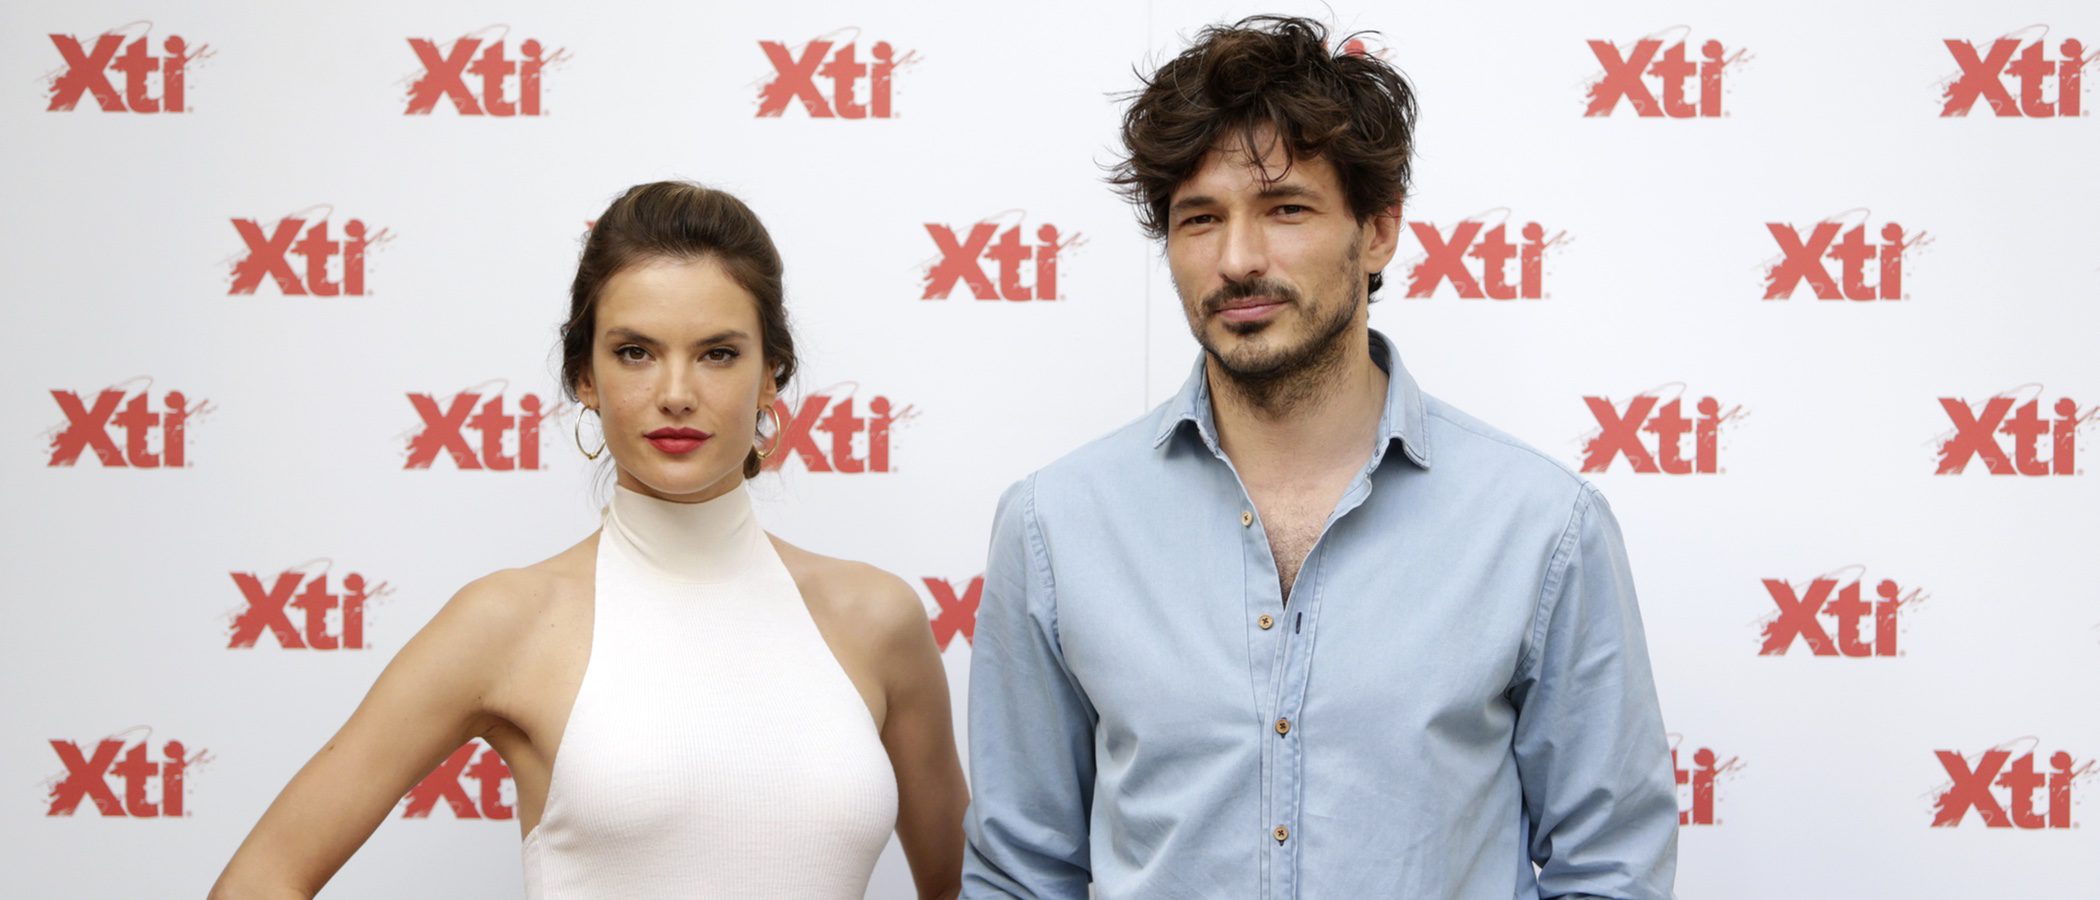 Andrés Velencoso y Alessandra Ambrosio protagonizan la campaña de Xti para verano 2017